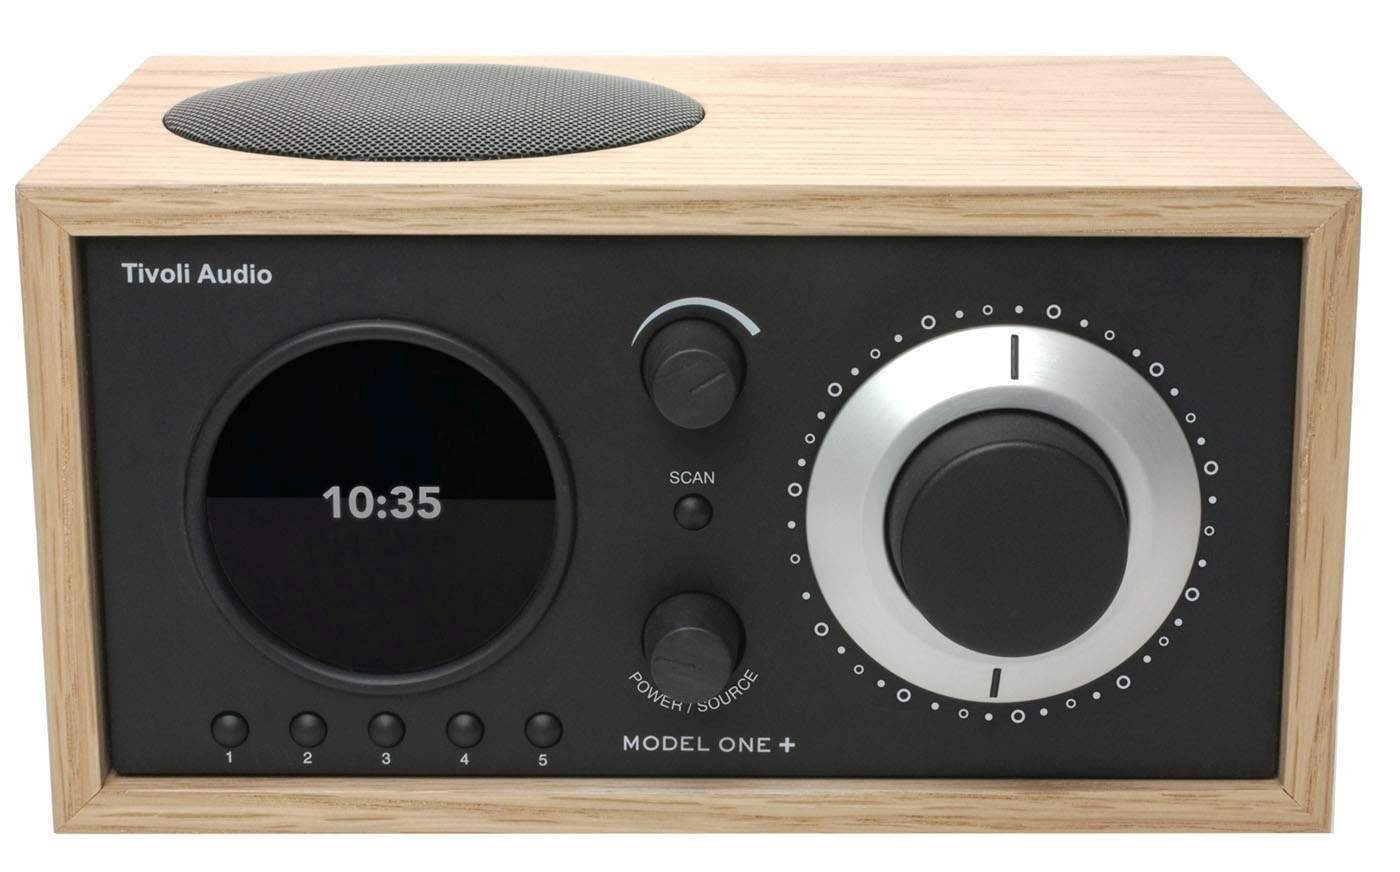 Tivoli Audio Model ONE+ Eiche/schwarz Wecker,Display DAB+ Digitalradio Uhranzeige, Fernbedienung) FM-Tuner, Bluetooth-Empfänger, (Digitalradio und Digitalradio (DAB) (DAB),FM-Tuner, mit